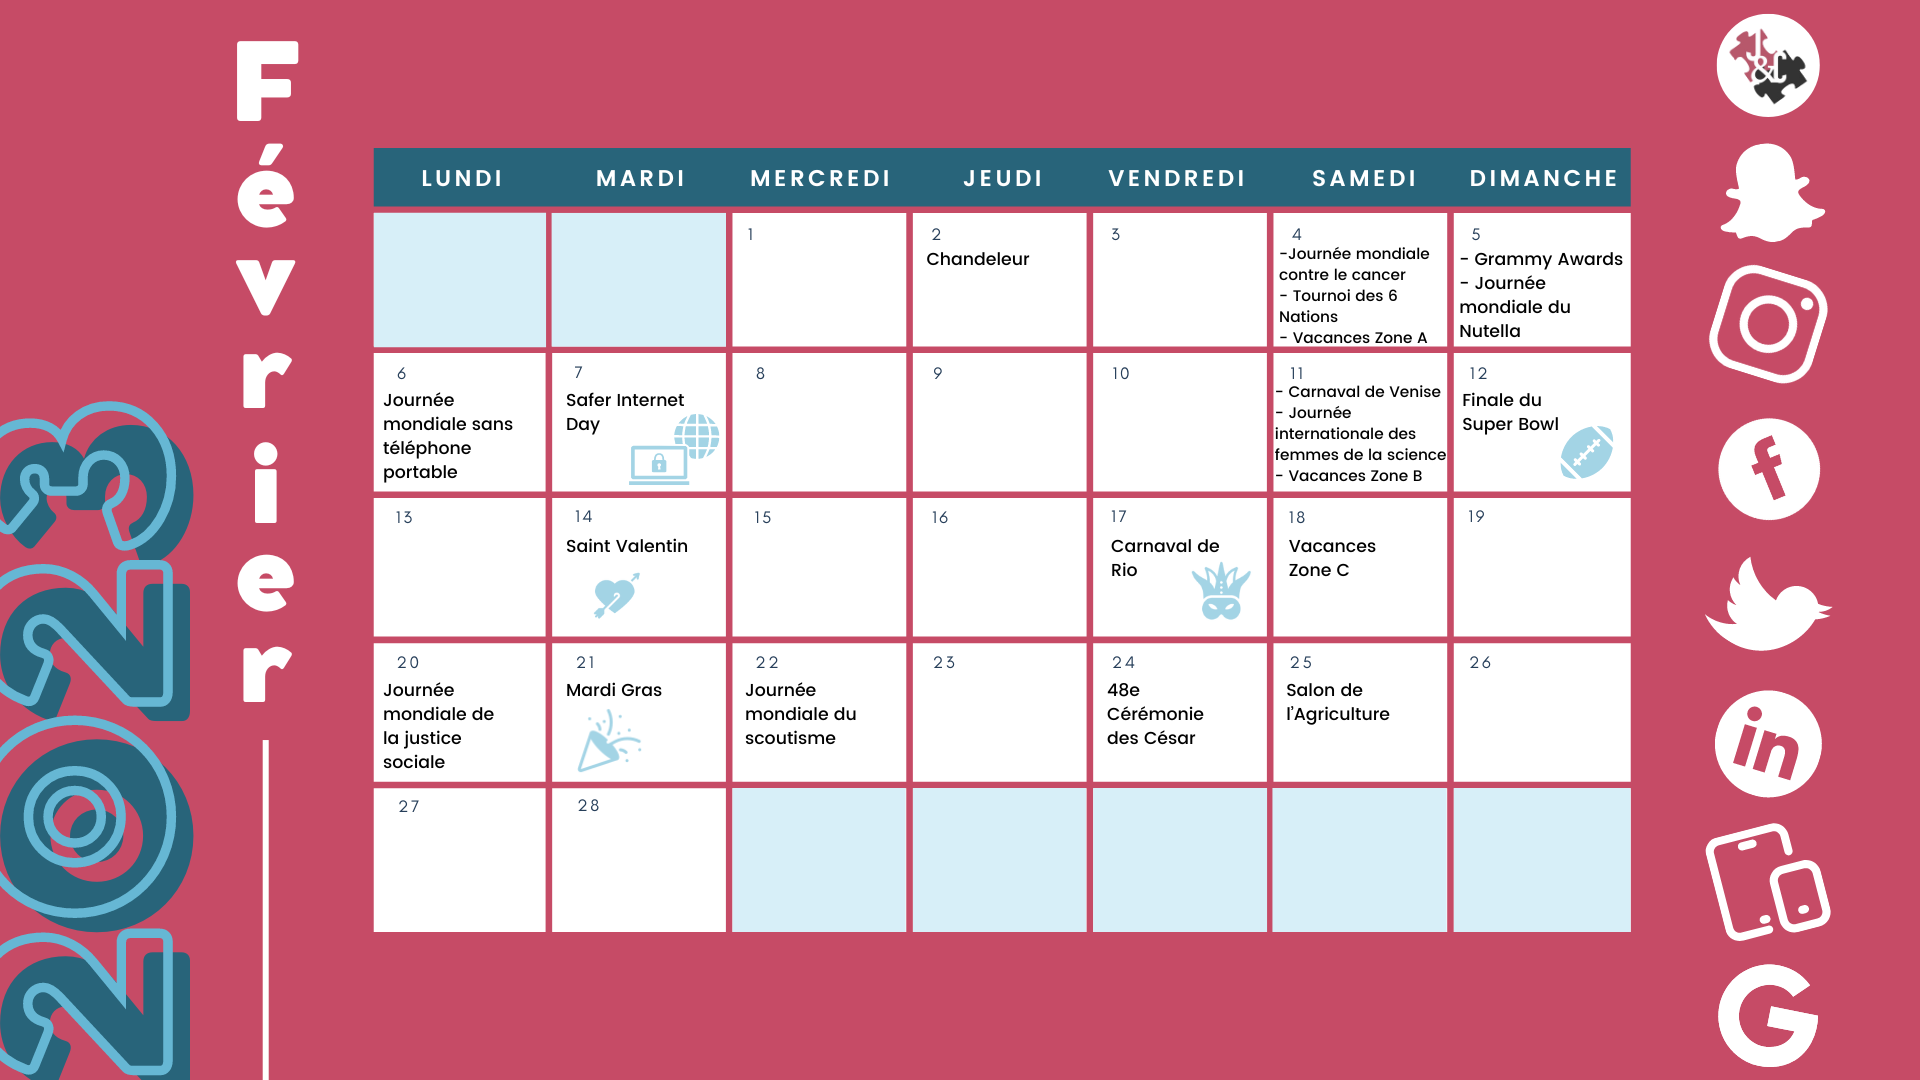 Retrouvez tous les événements clés du mois de février grâce à votre calendrier marronnier février 2023 !